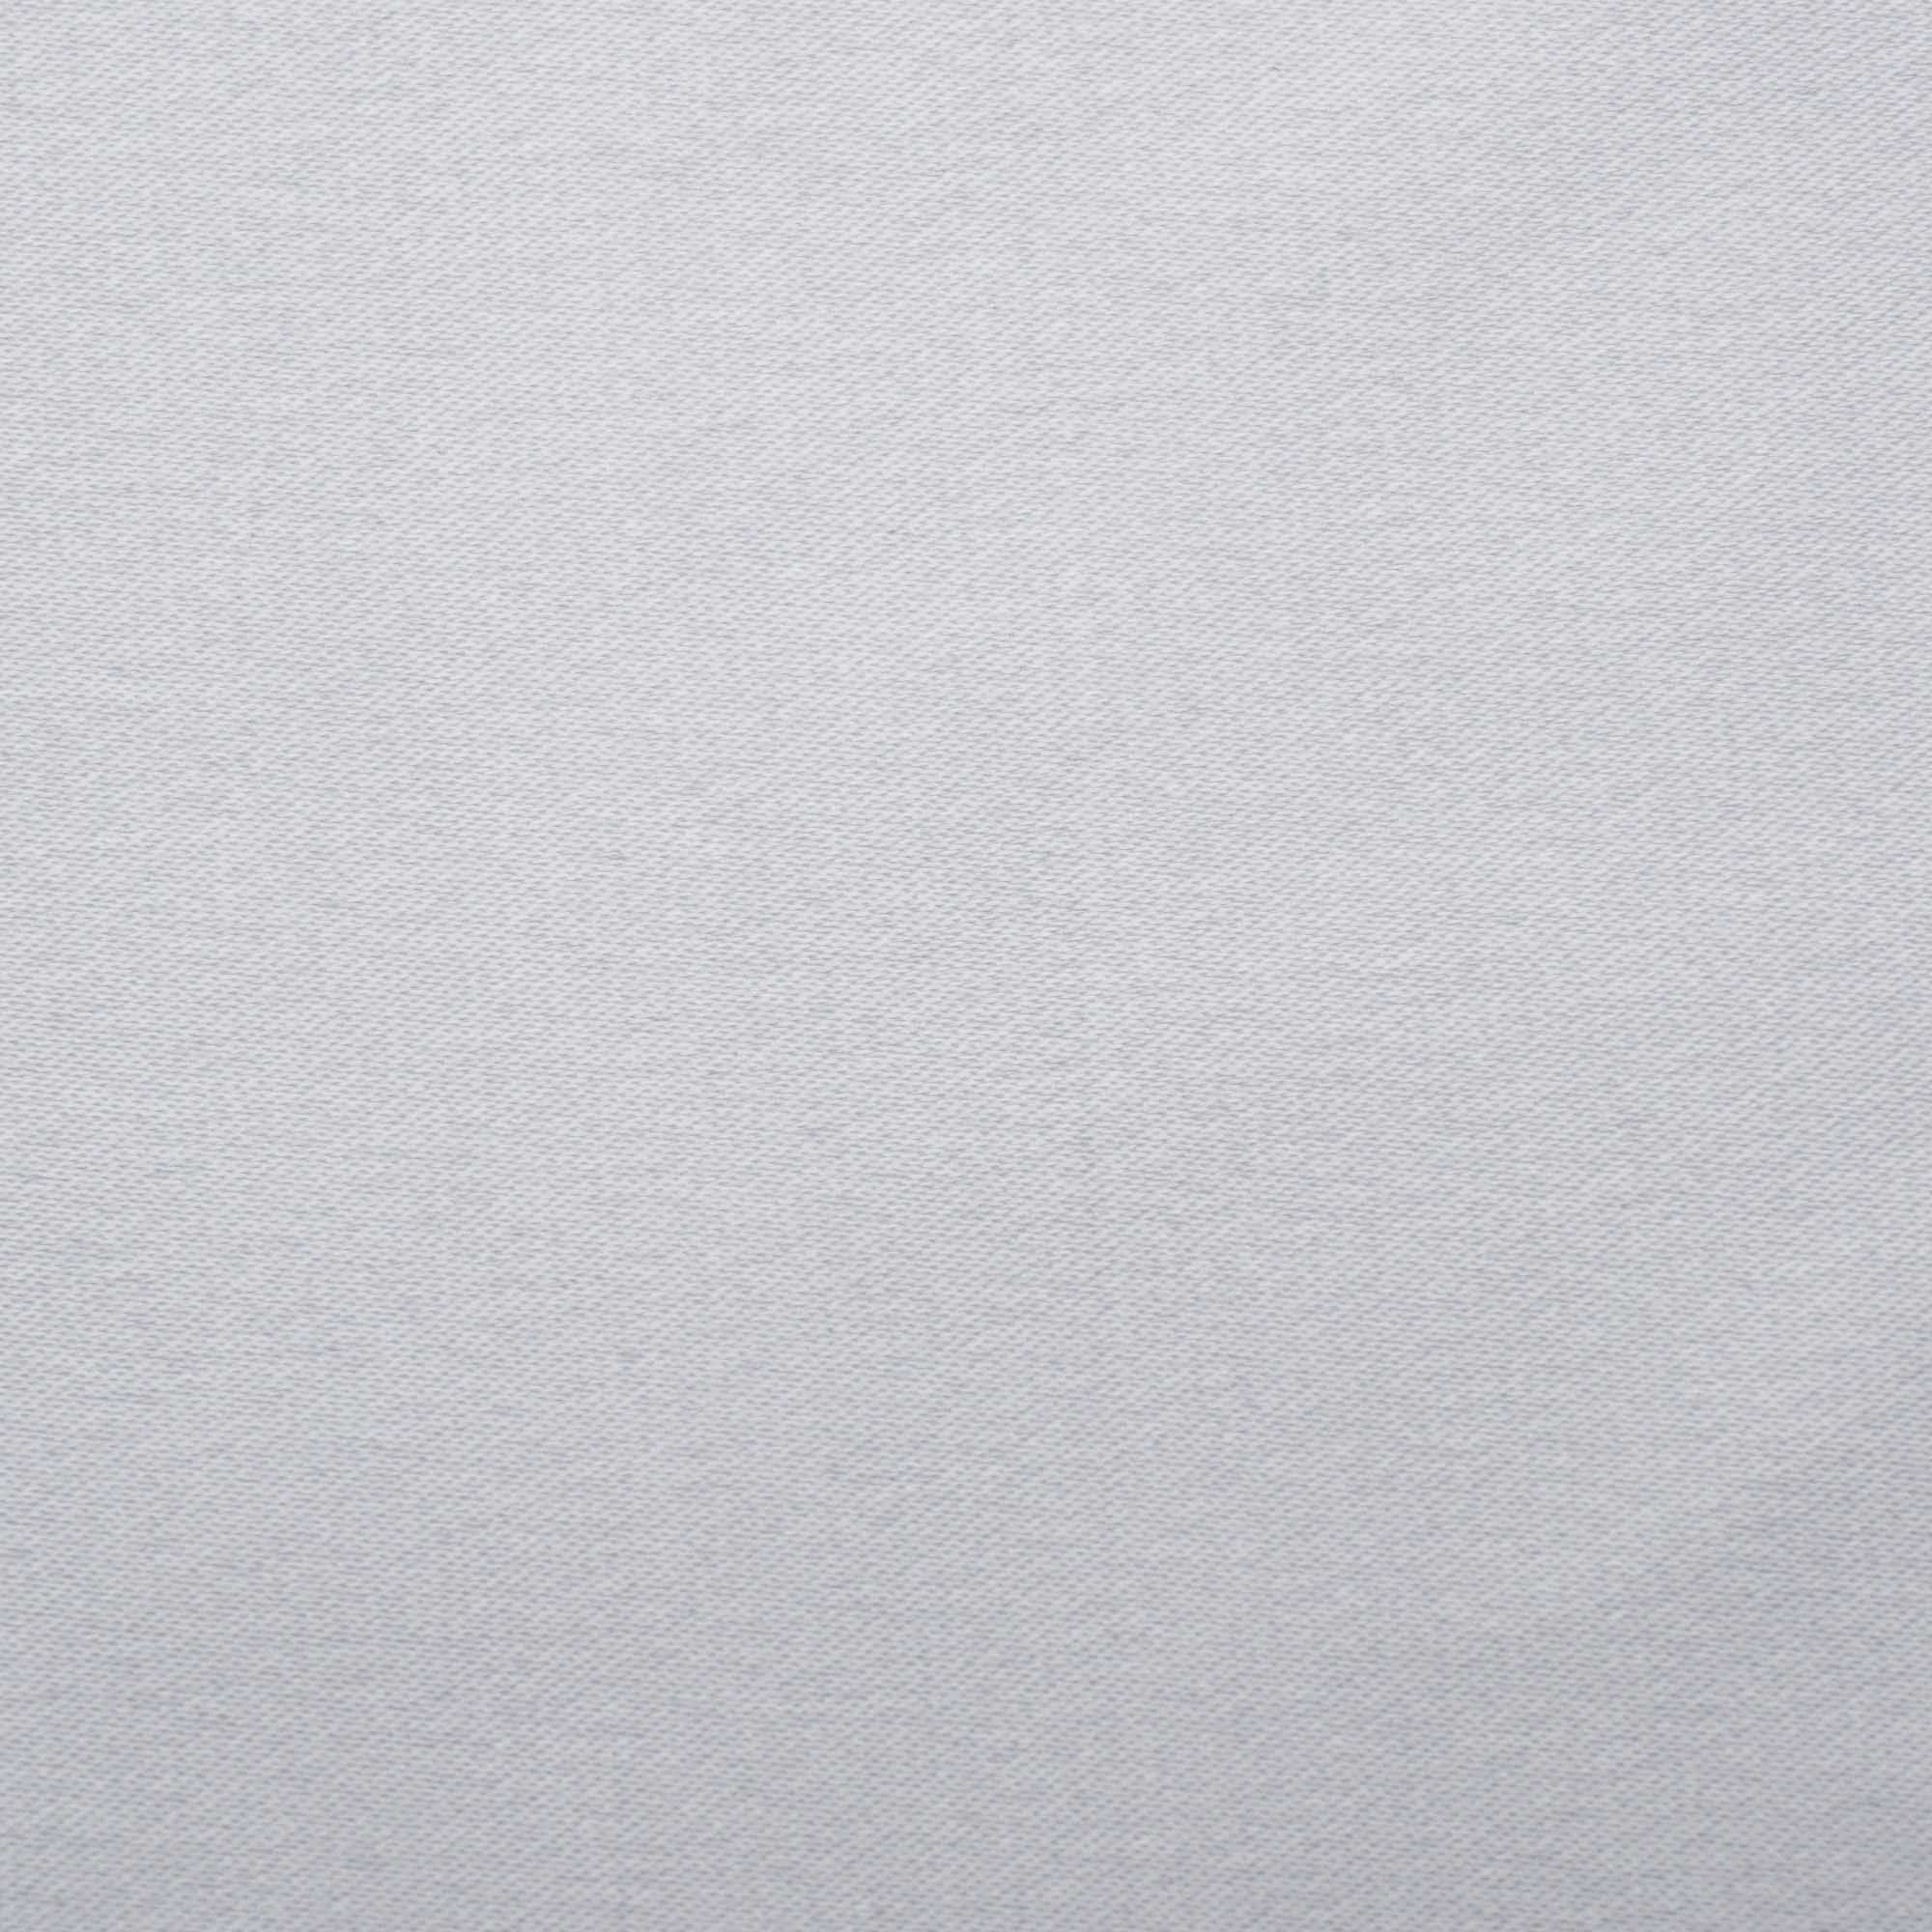 Tecido crepe pasquale off white und 50cm x 147cm